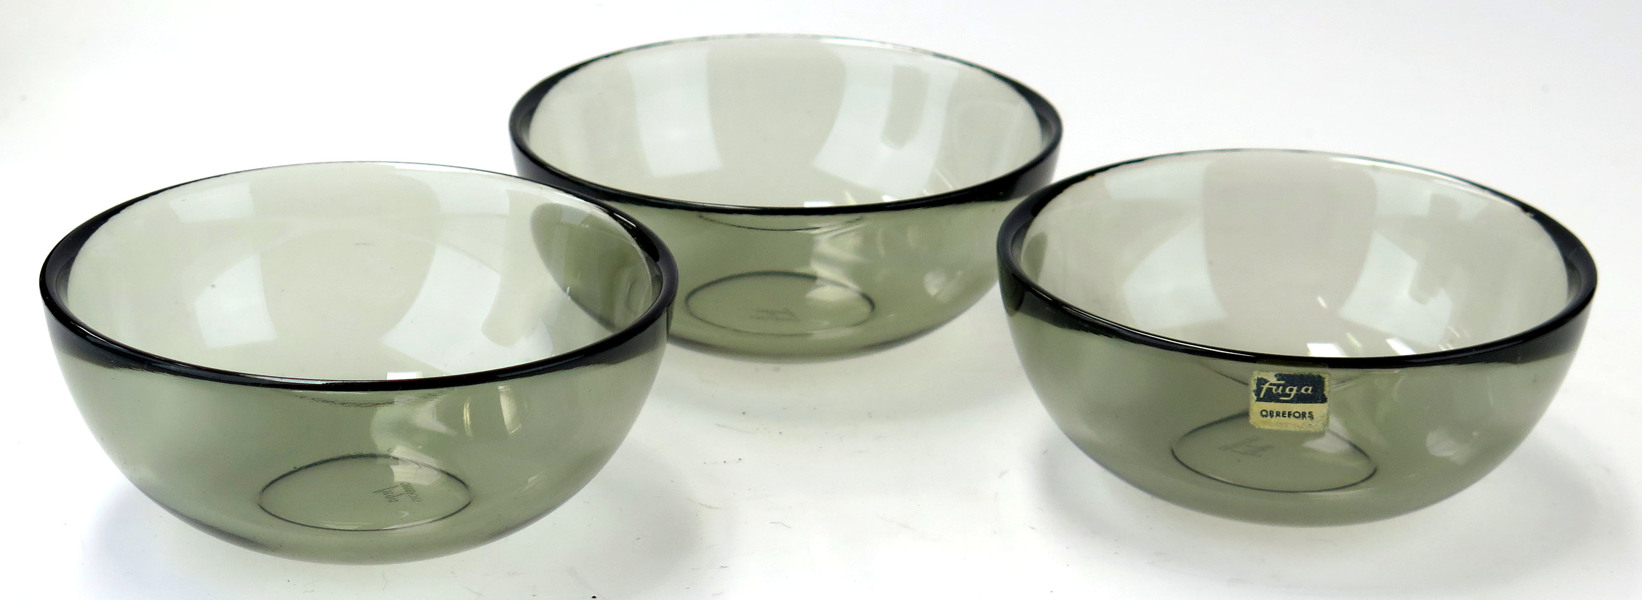 Palmquist, Sven för Orrefors, skålar 3 st, gråtonat glas, Fuga, design 1953, _1598a_lg.jpeg